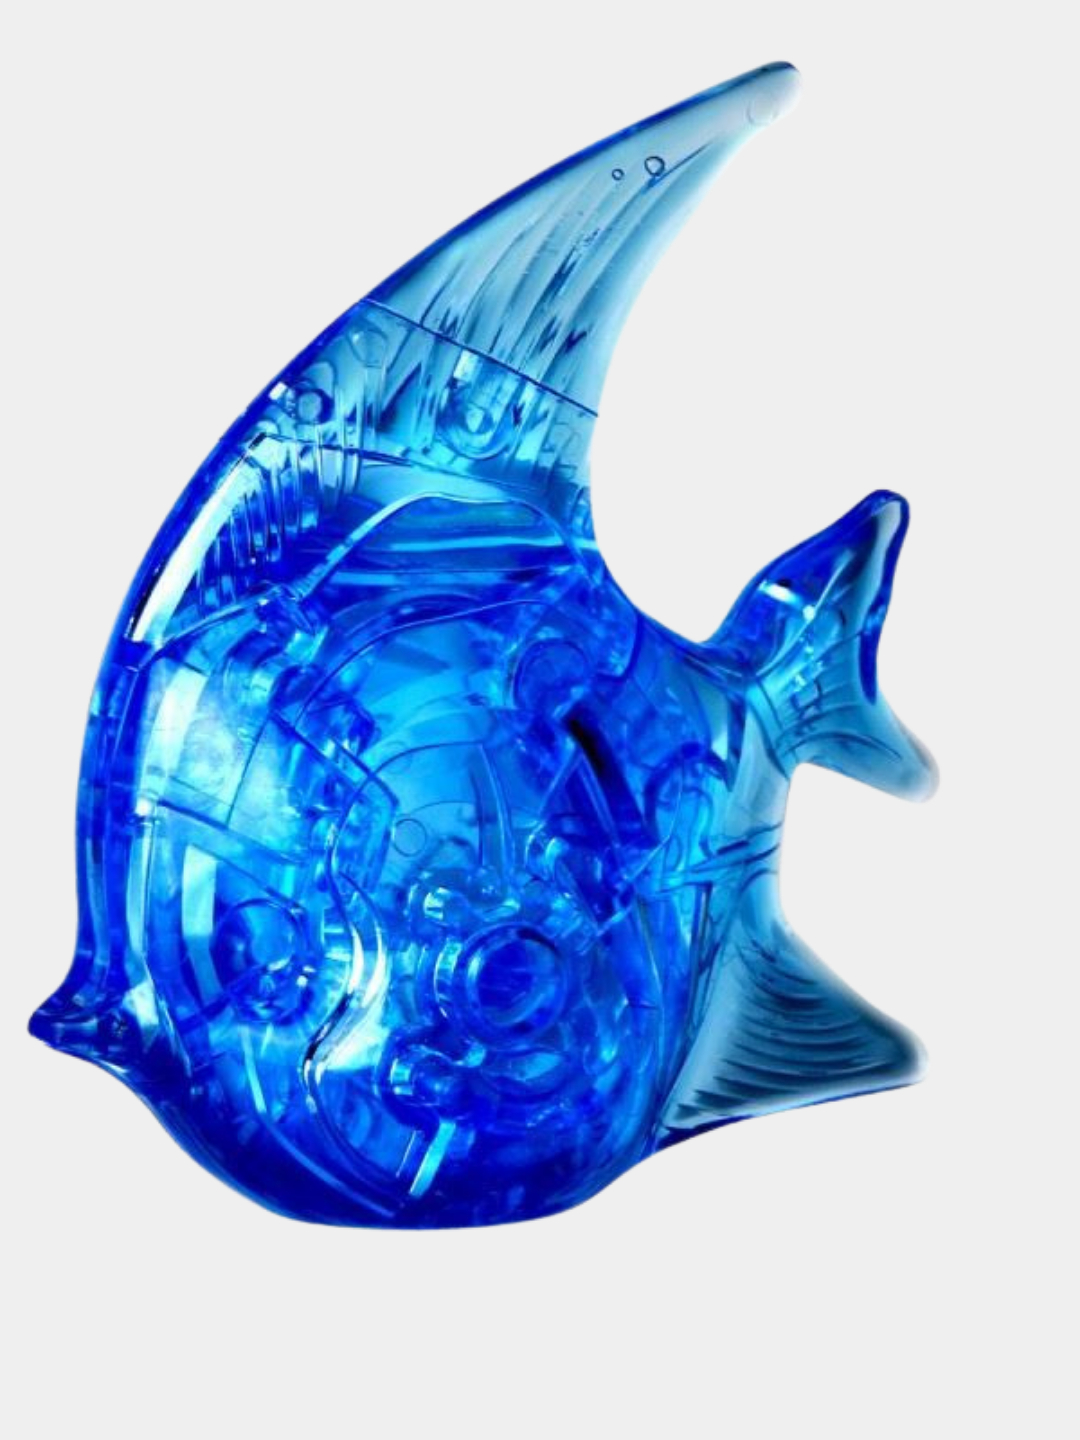 2024 г для рыб. 3d магический Кристалл Puzzle рыба. 3d-пазл магический Кристалл рыбка с подсветкой (yj6911), 19 дет.. 3д пазл кристаллический. Объемные пазлы.